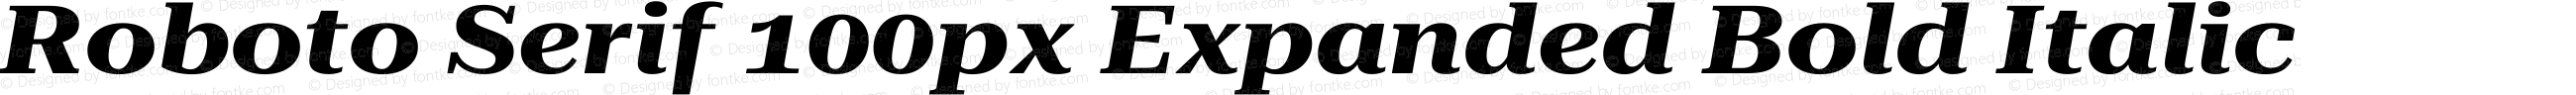 Roboto Serif 100px Expanded Bold Italic